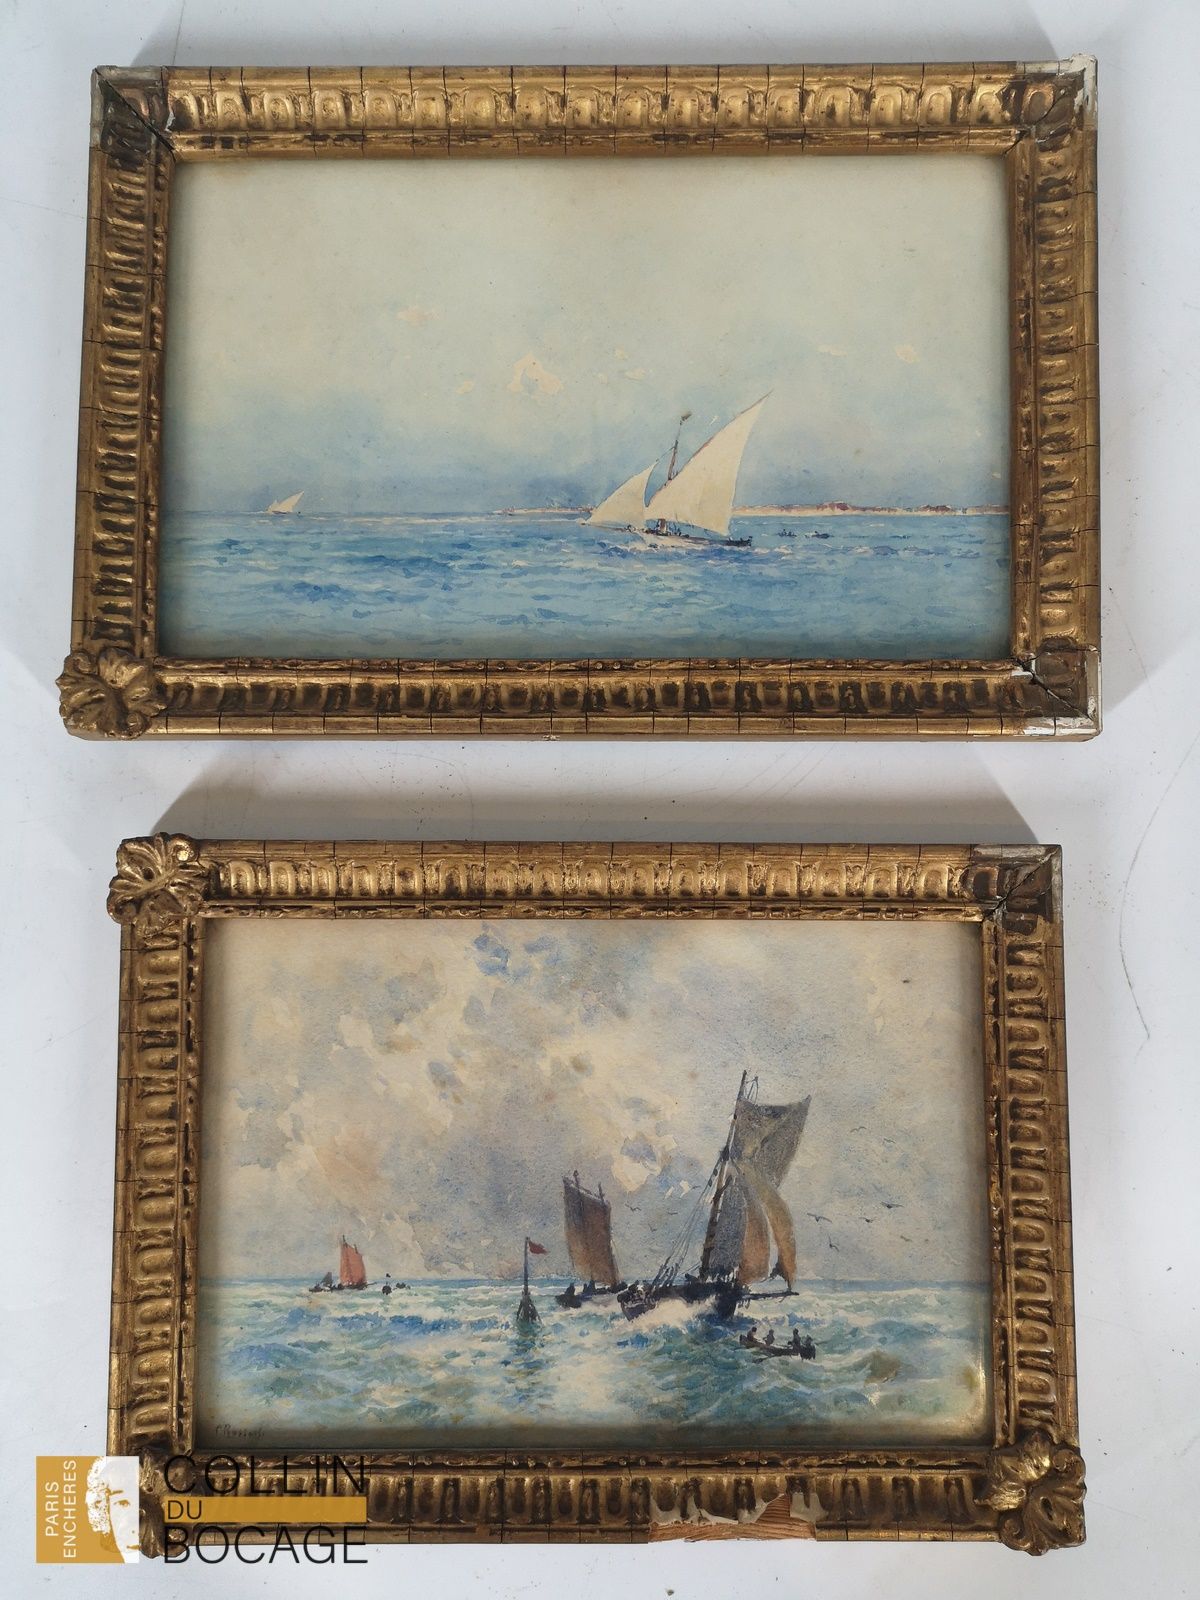 Null 保罗-罗塞特（1851-1918）
马林 
水彩画（两幅）
左下方和右下方有签名 
14 x 21 厘米